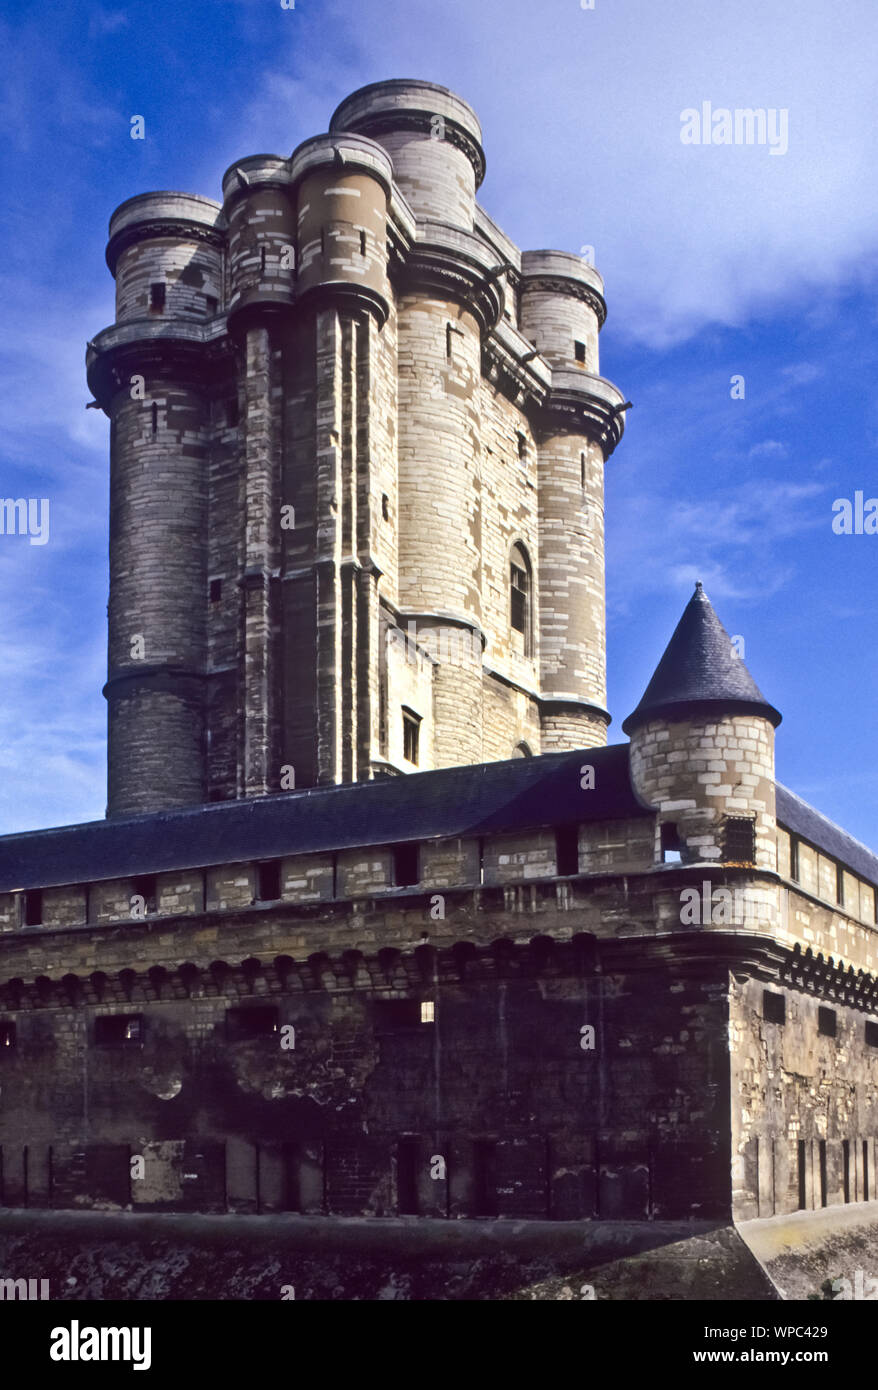 Das Schloss Vincennes in der am östlichen Rand von Paris gelegenen Stadt Vincennes ist neben dem Louvre eines der bedeutendsten Schlösser in der Gesch Stock Photo